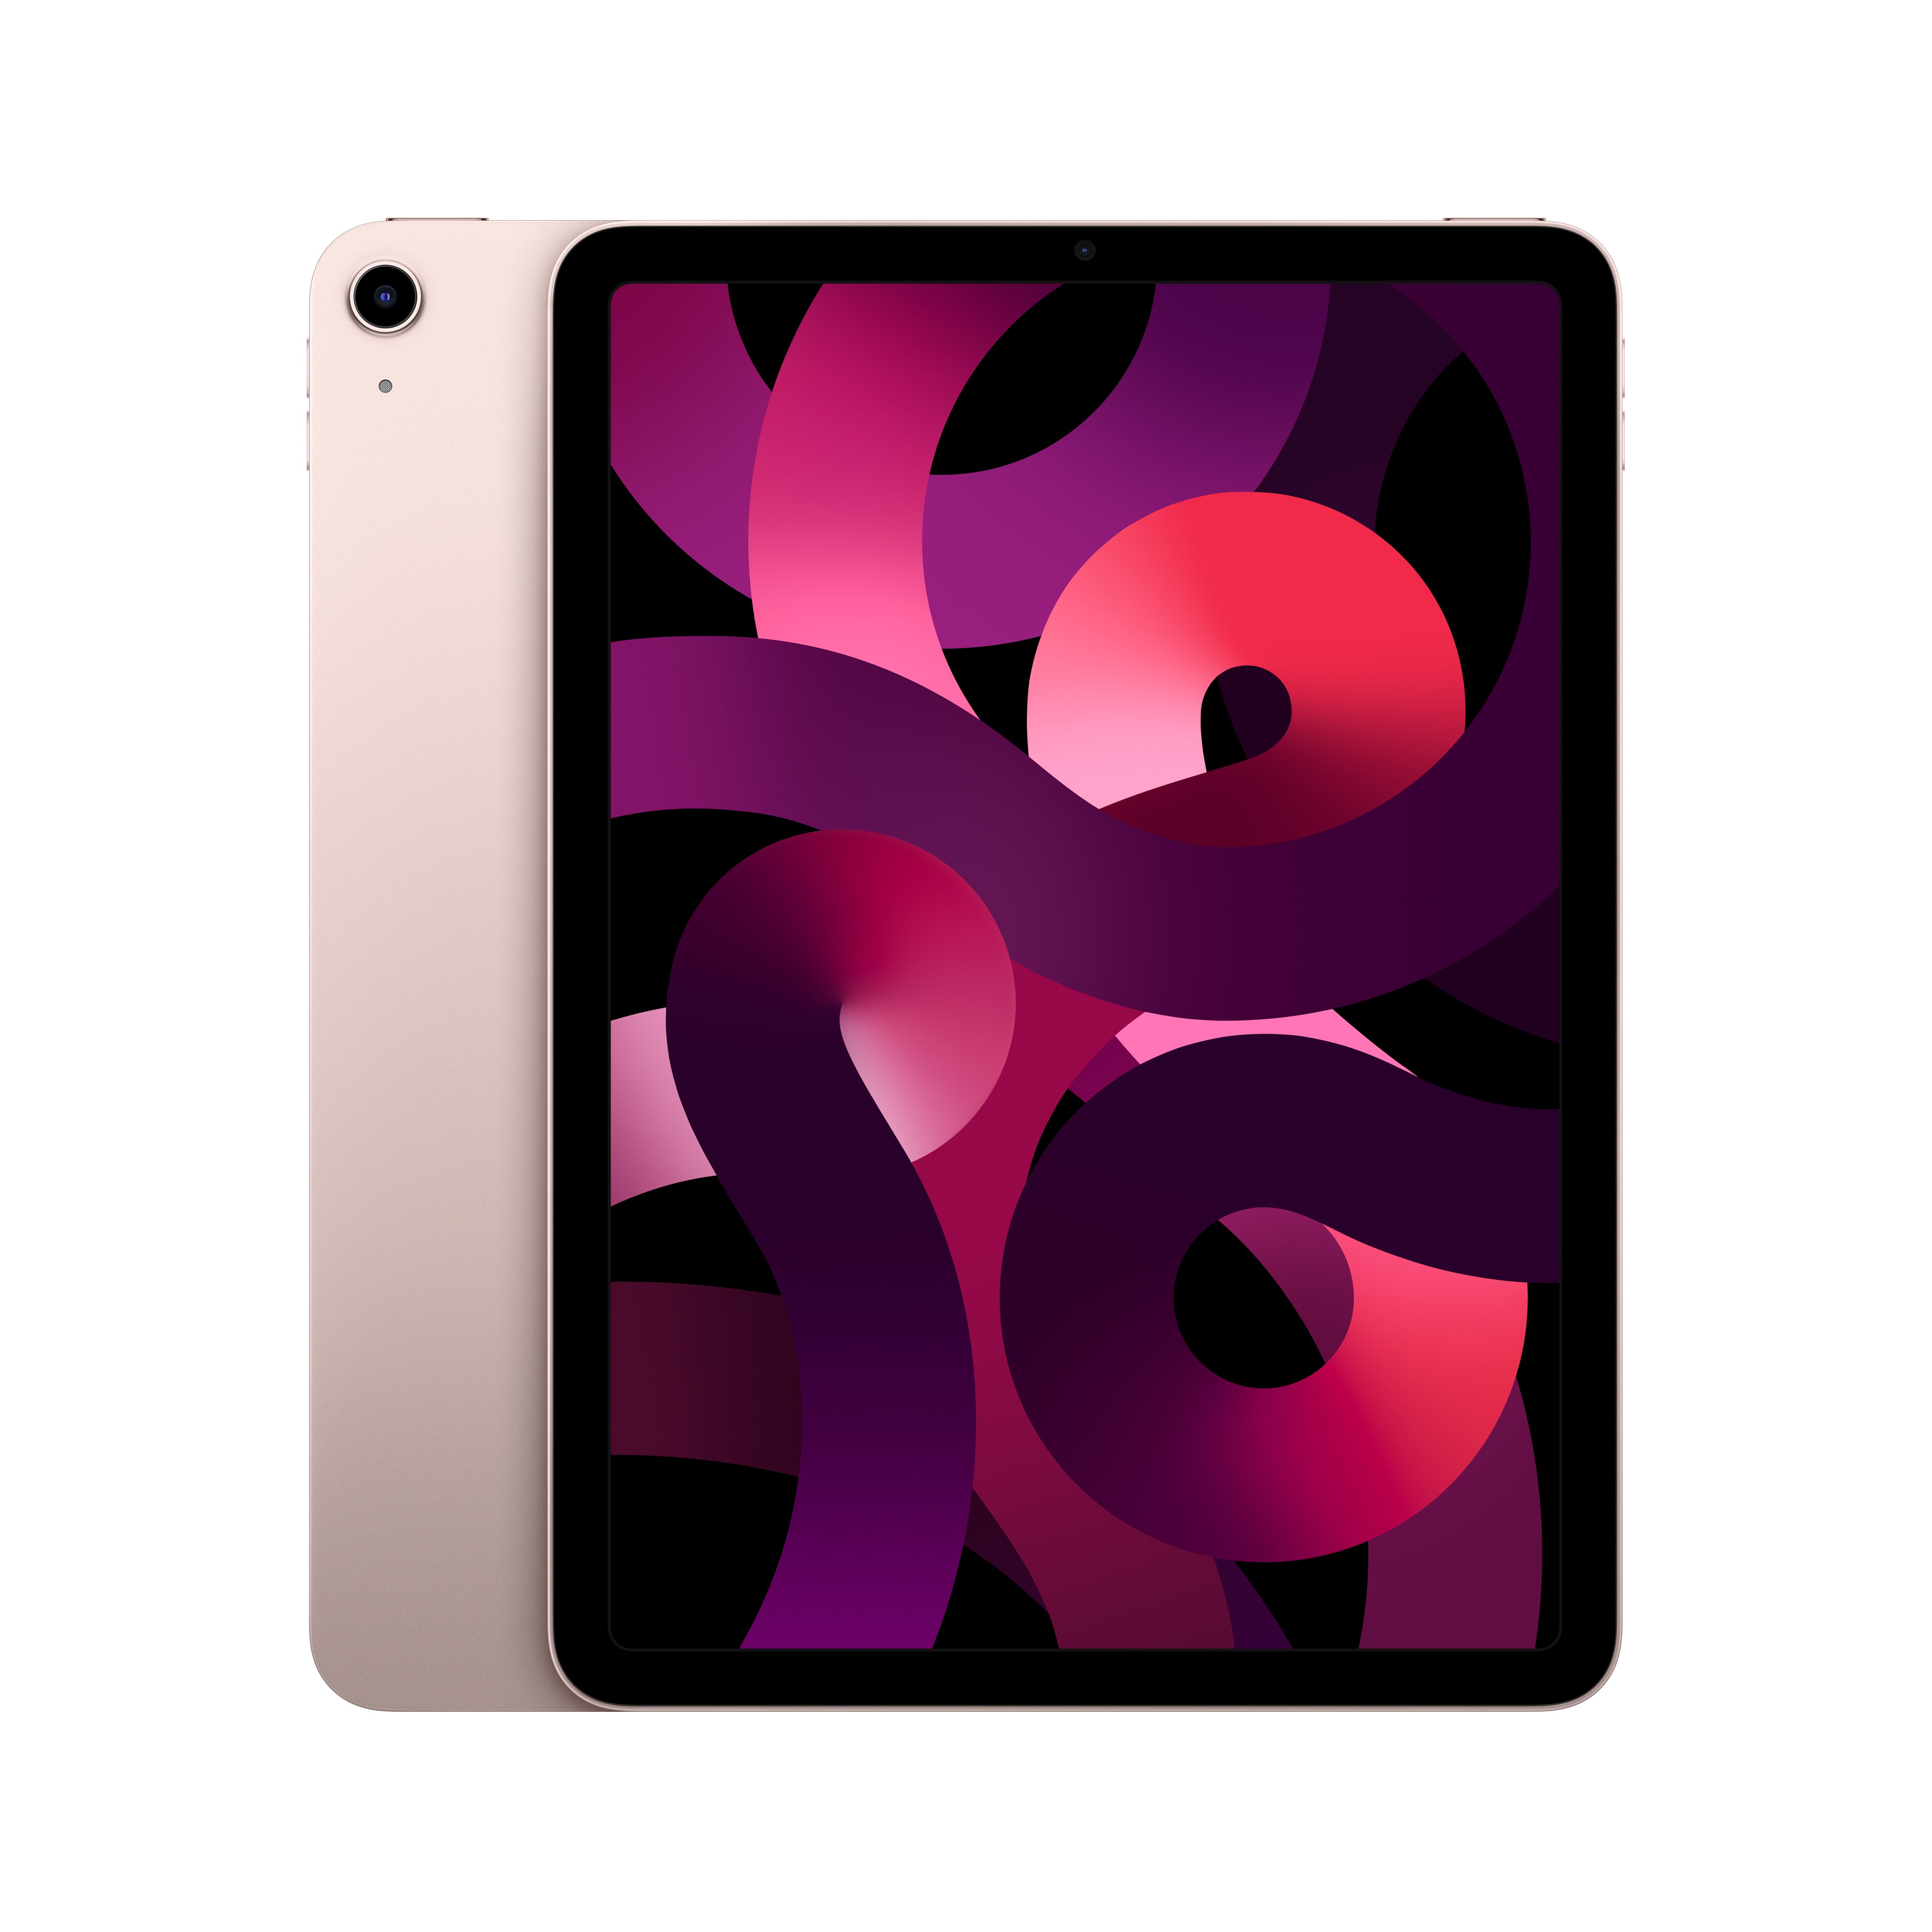 iPad Air 5th Generation WiFi 256GB - Pink